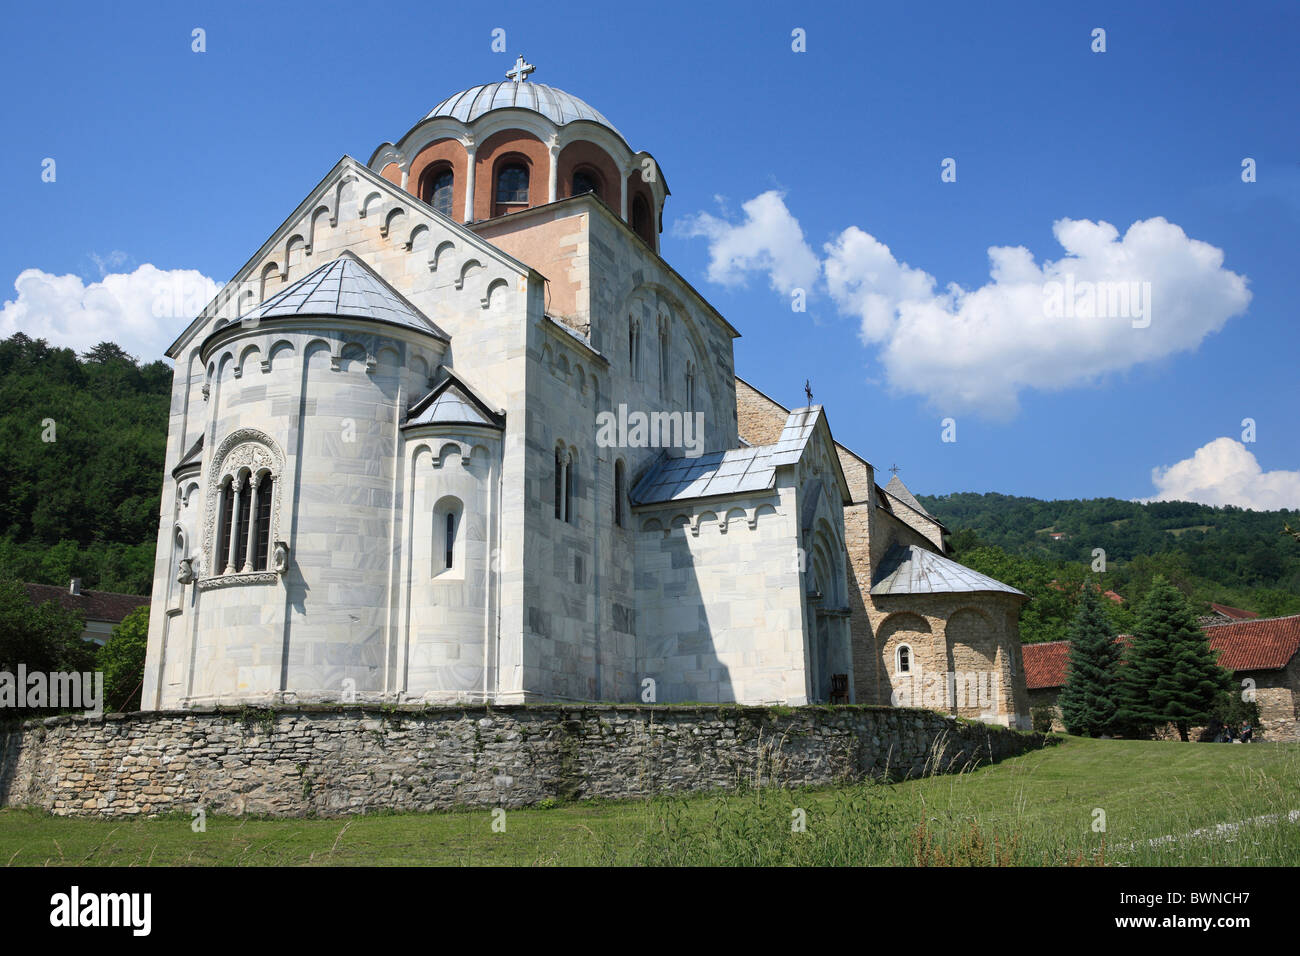 Monastère de Studenica Serbie Raska Église de la Vierge Europe ciel bleu byzantin de l'Église Assomption Sainte Vierge Banque D'Images